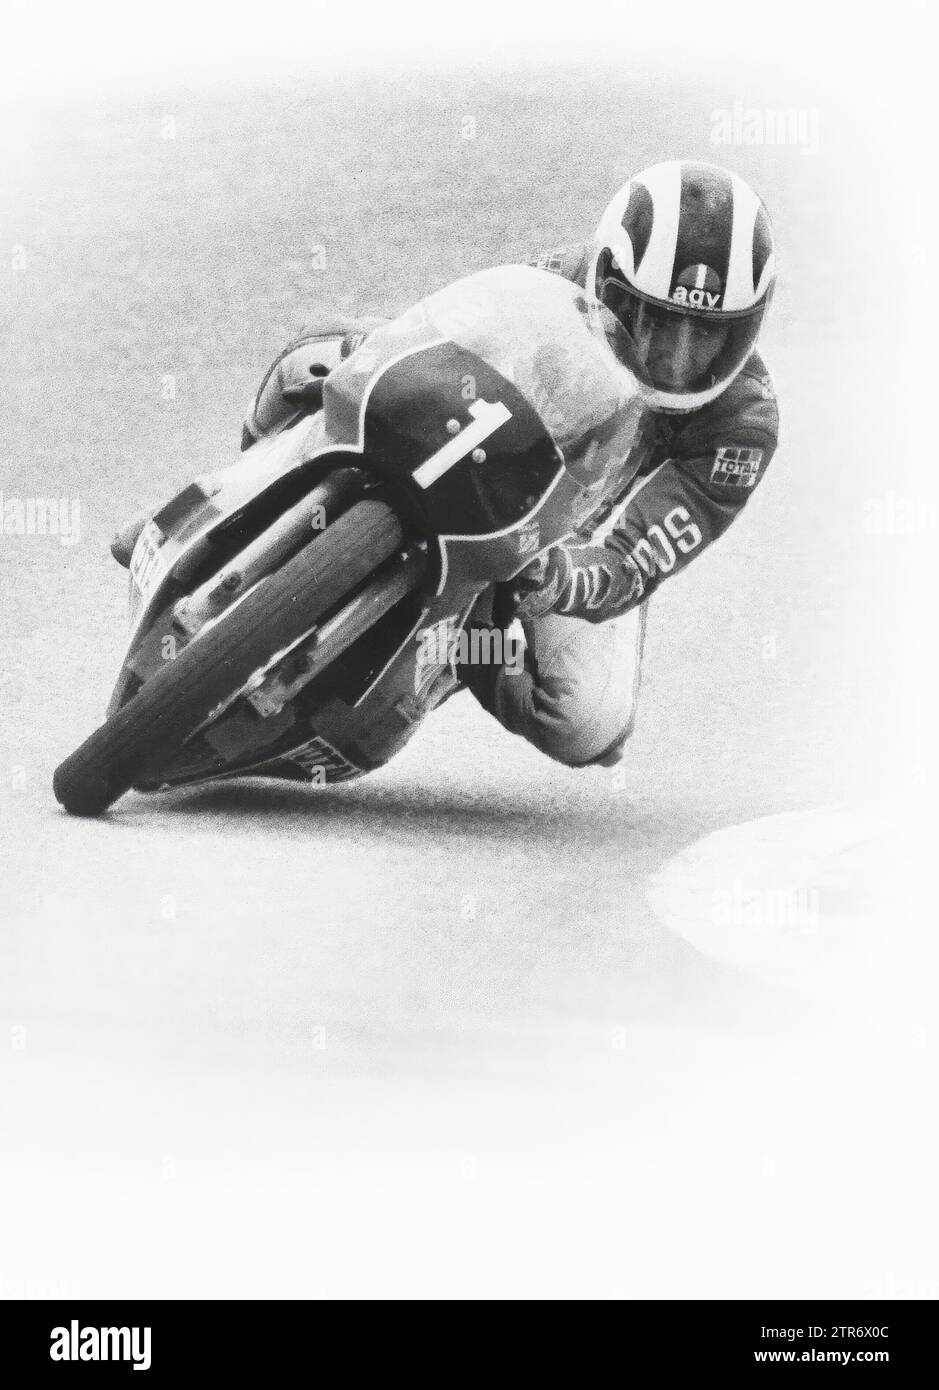 04/30/1980. Ángel Nieto, in un'immagine retrospettiva, sul circuito di Jarama, quando era pilota Garelli. Crediti: Album / Archivo ABC Foto Stock